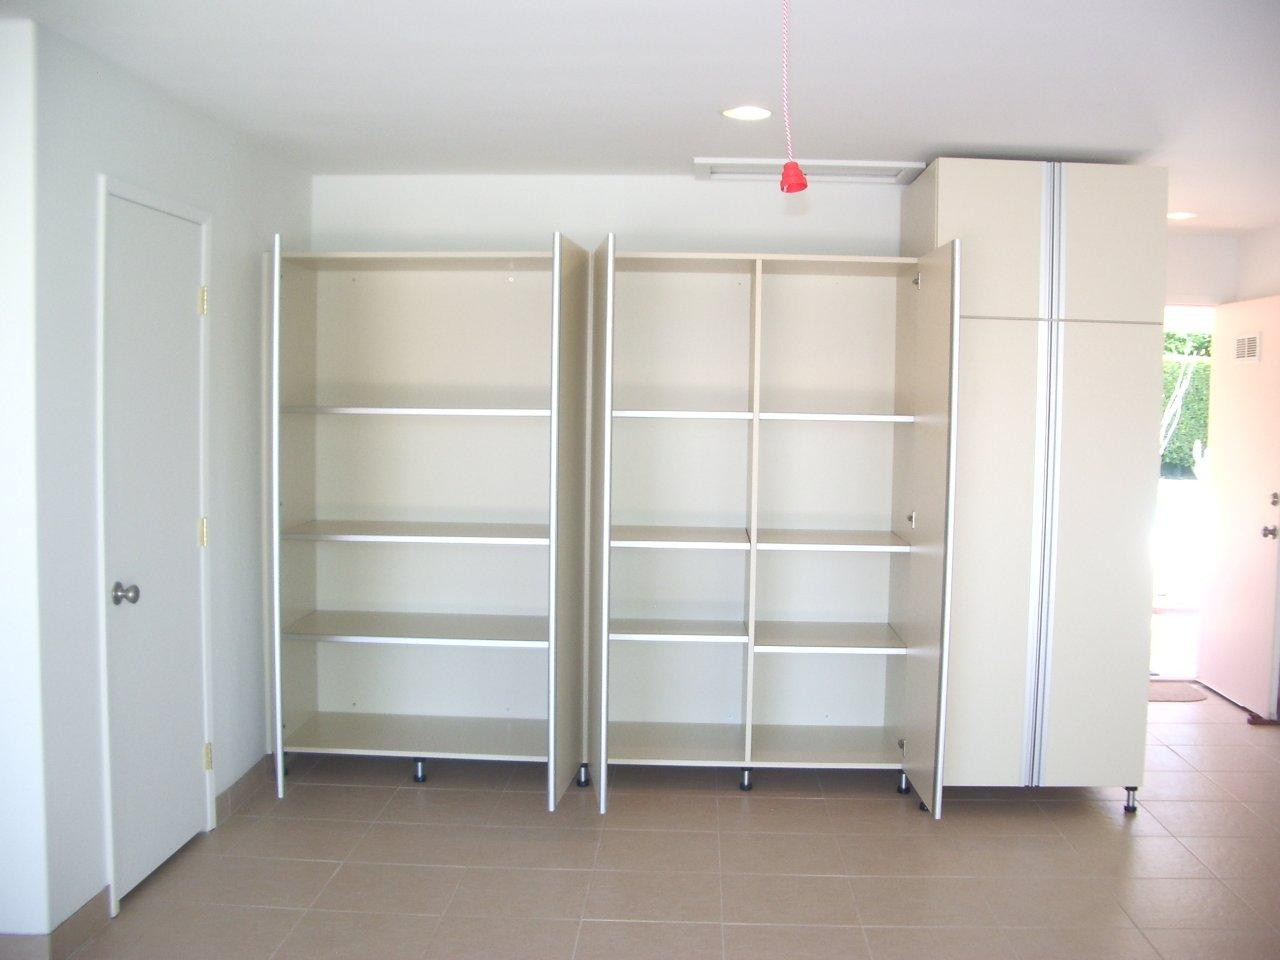 Best ideas about Garage Storage Cabinet
. Save or Pin Garage storage cabinets Now.